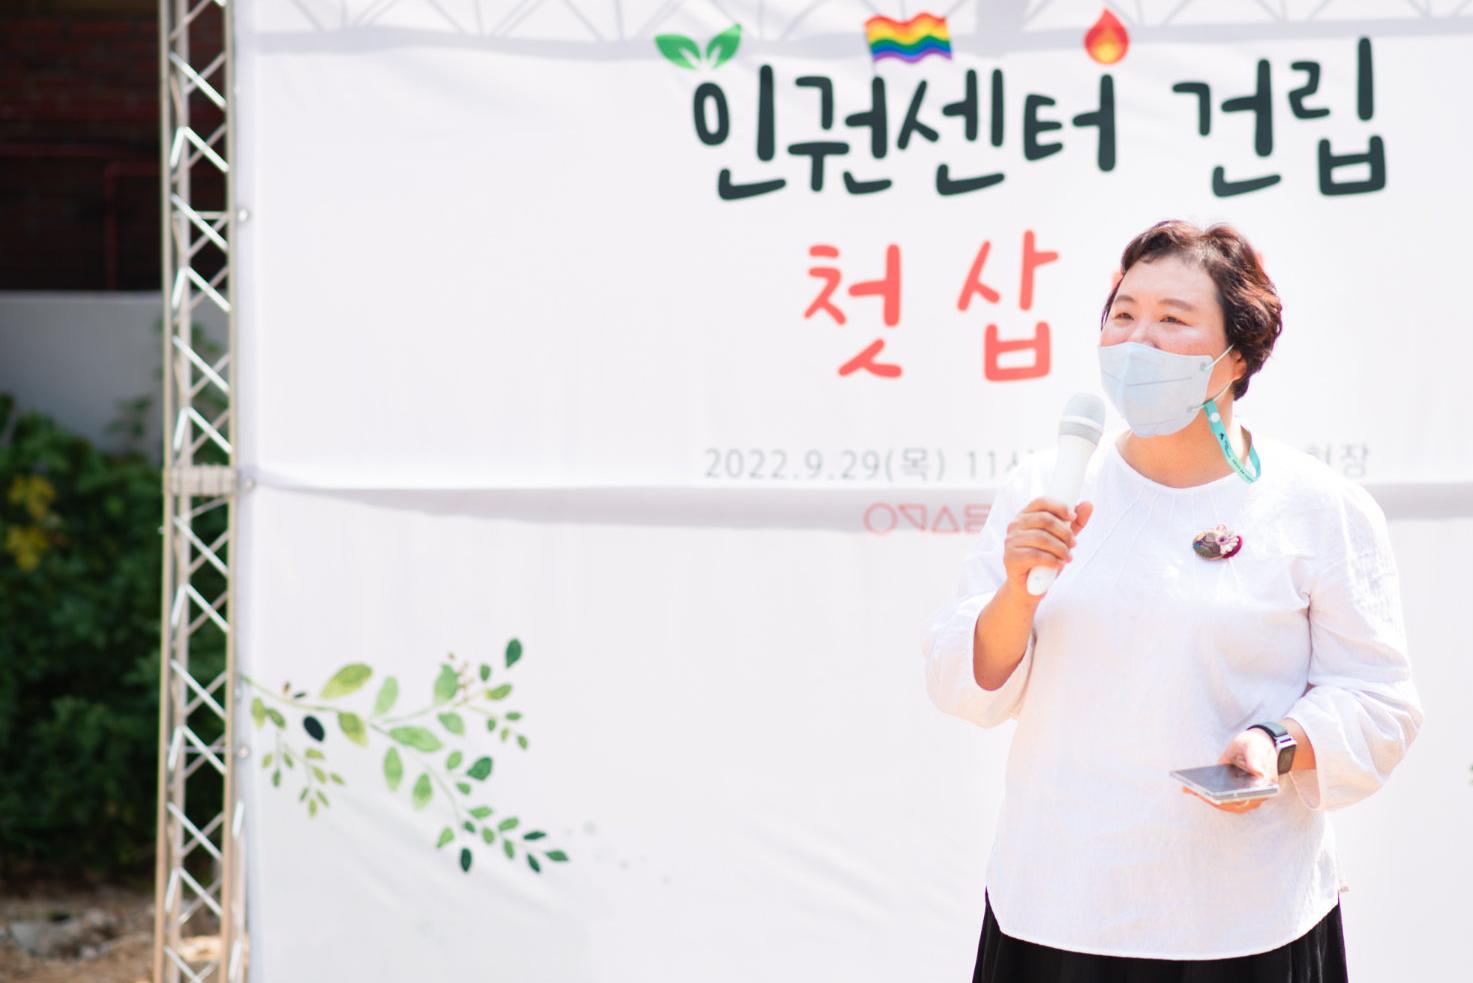 흰 티셔츠를 입고 마스크를 착용한 한 여성이 마이크를 들고 발언하고 있다.